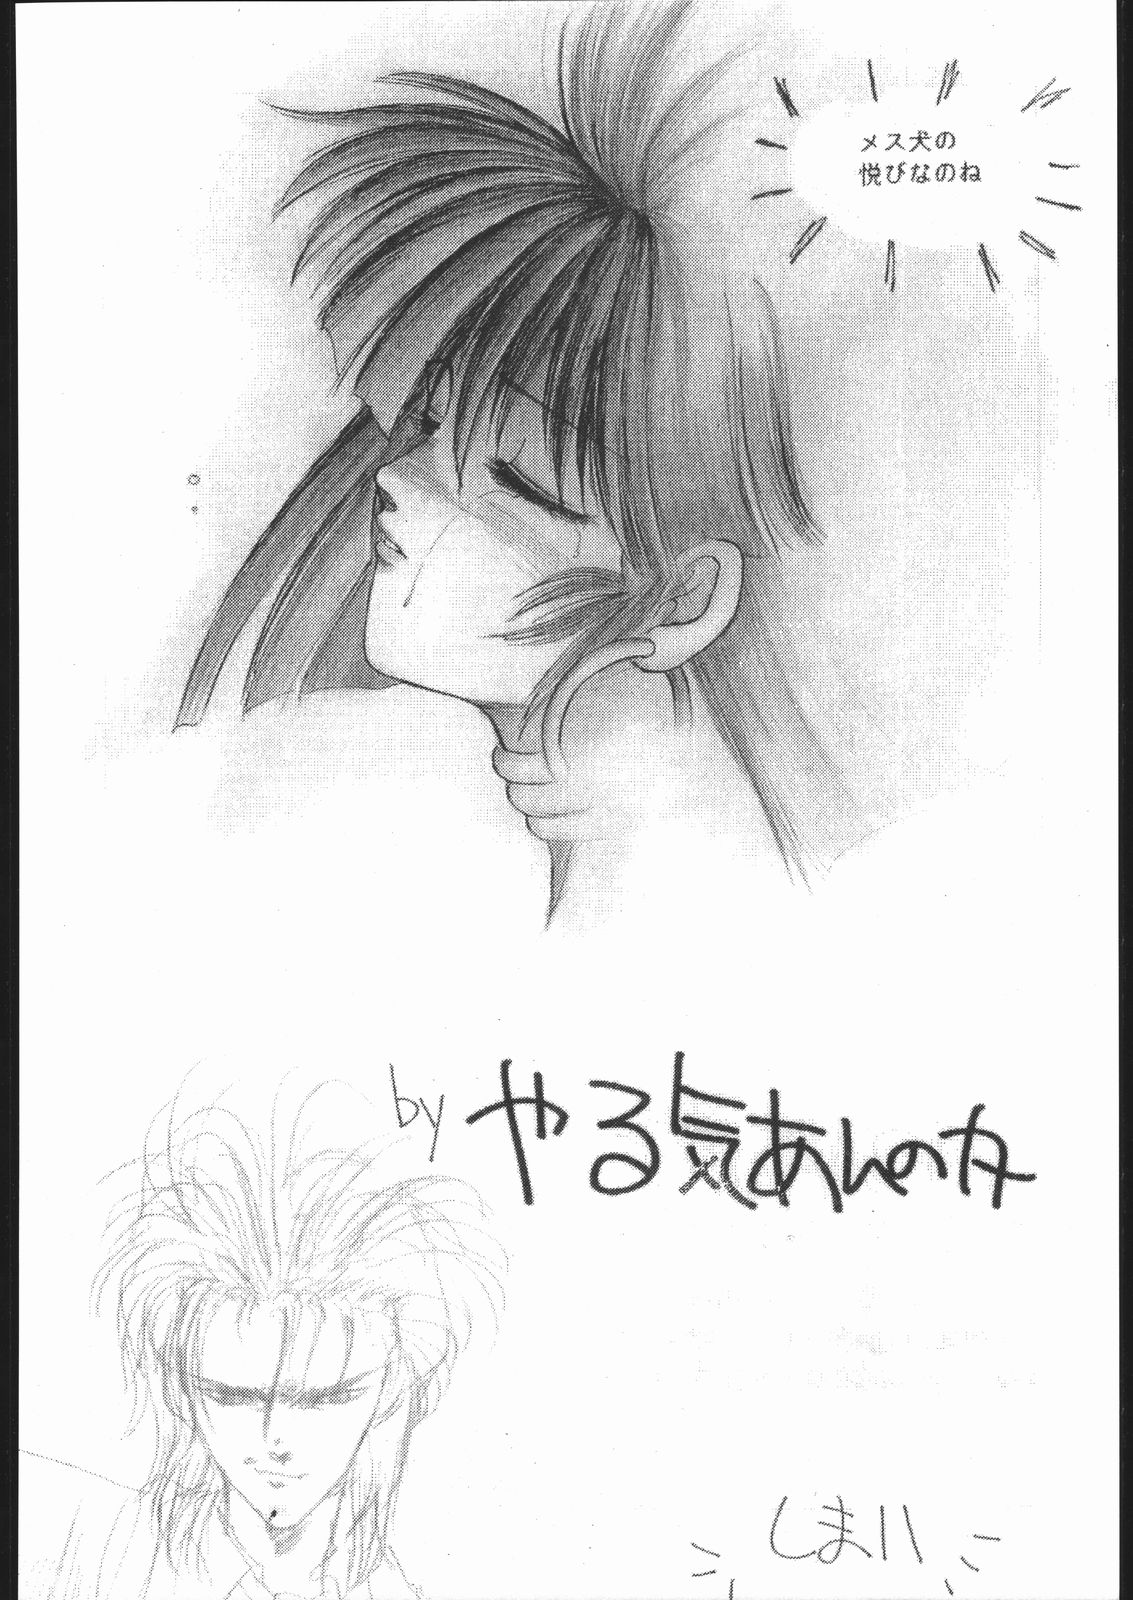 [HITECH JAPAN (Shiki Satoshi)] CATALOGUE 1988-1995 (Various) [ハイテクJAPAN (士貴智志)] CATALOGUE 1988-1995